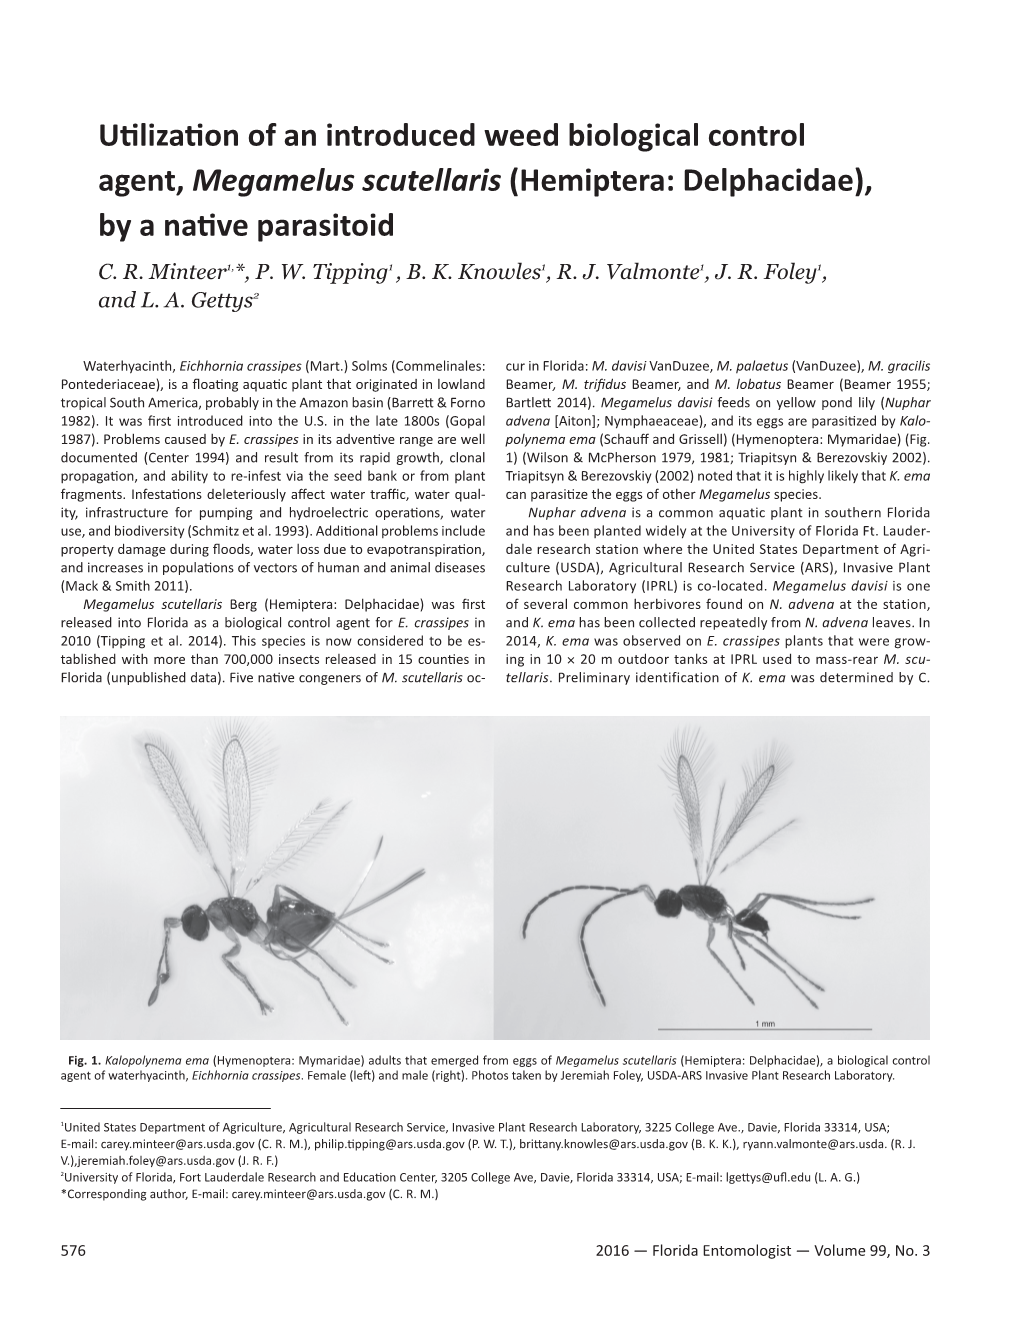 Hemiptera: Delphacidae), by a Native Parasitoid C